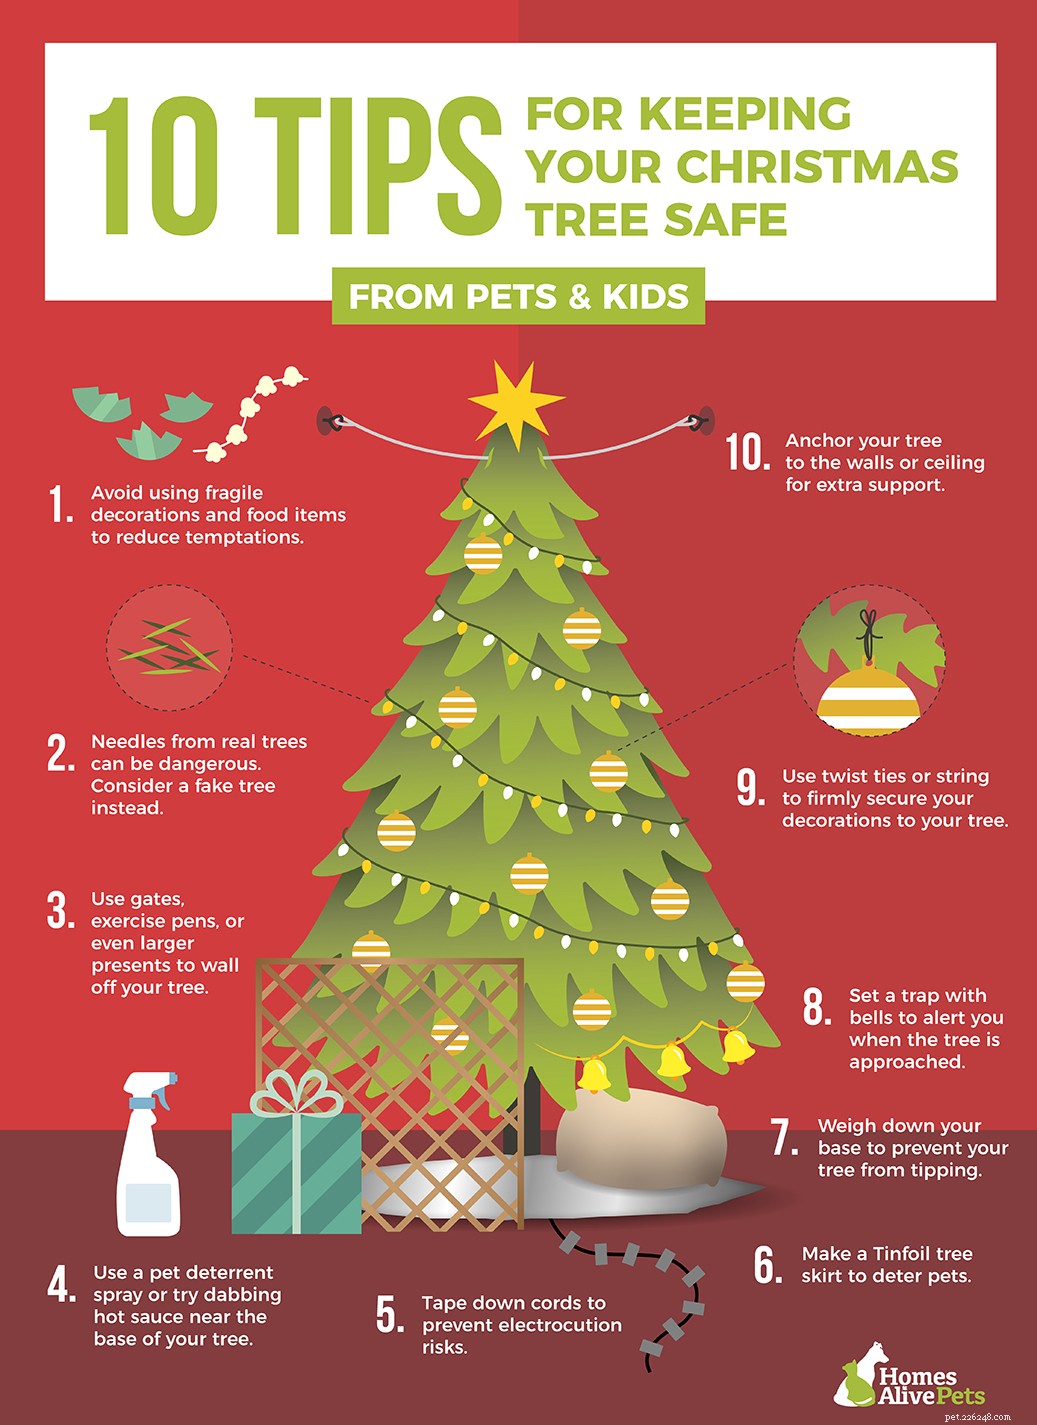 10 tips om uw hond uit de buurt van uw kerstboom te houden